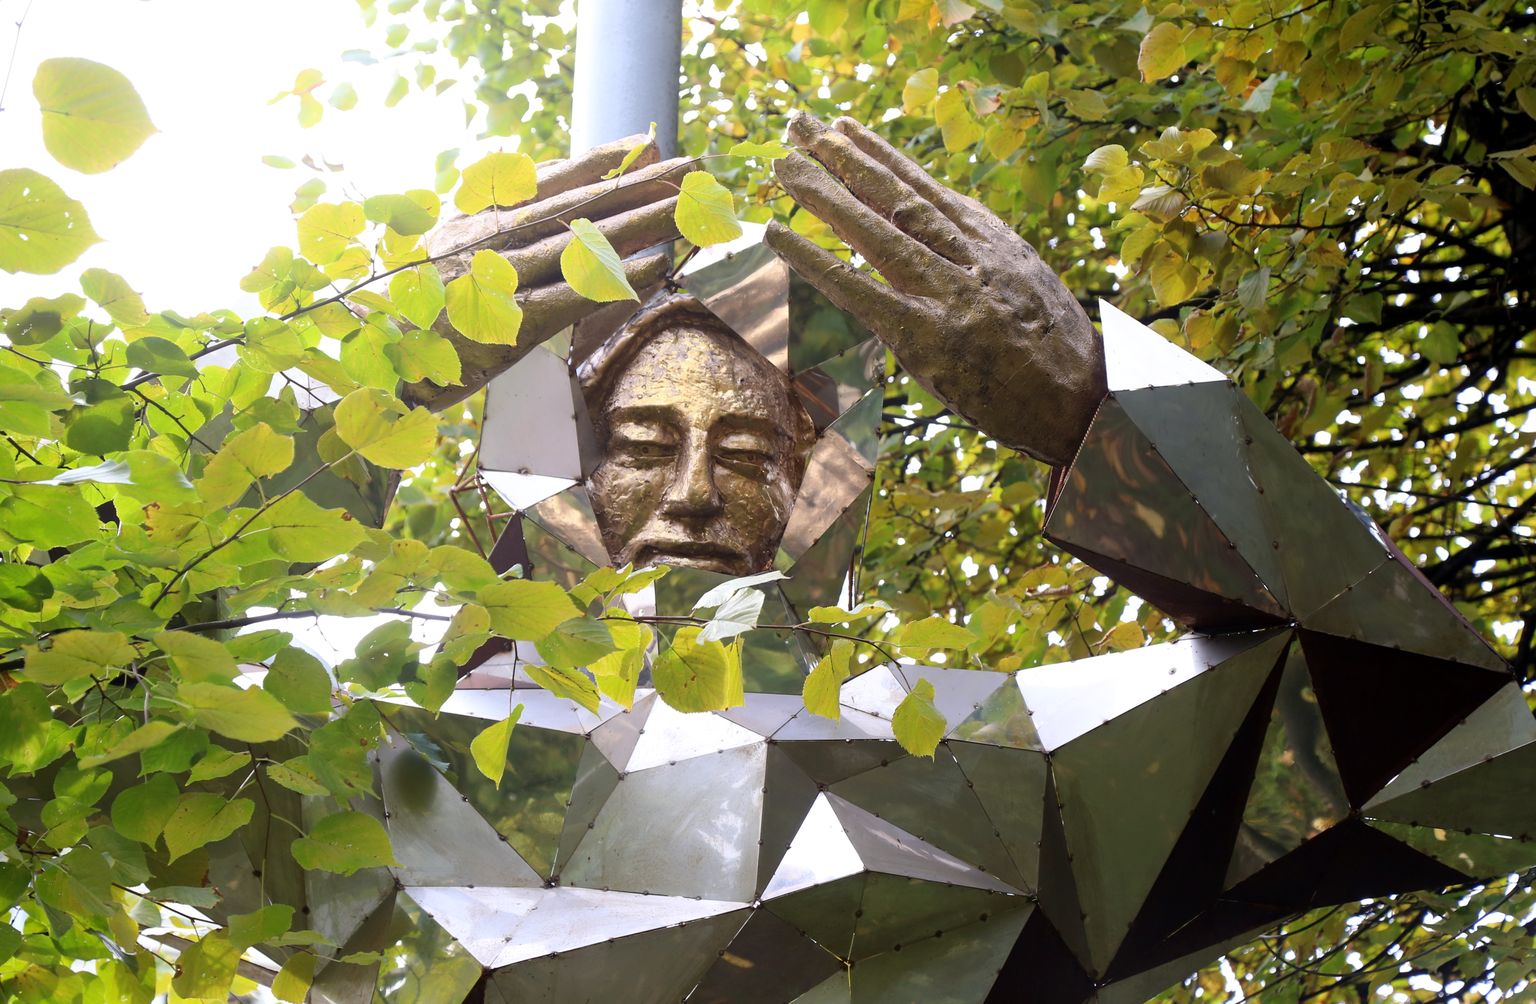 Latvijas Mākslas akadēmijas studenta Andreja Ratkēviča veidotais tēlniecības vides objekts "Saules pielūdzēji" laikmetīgās mākslas izstādē Brīvības alejā.